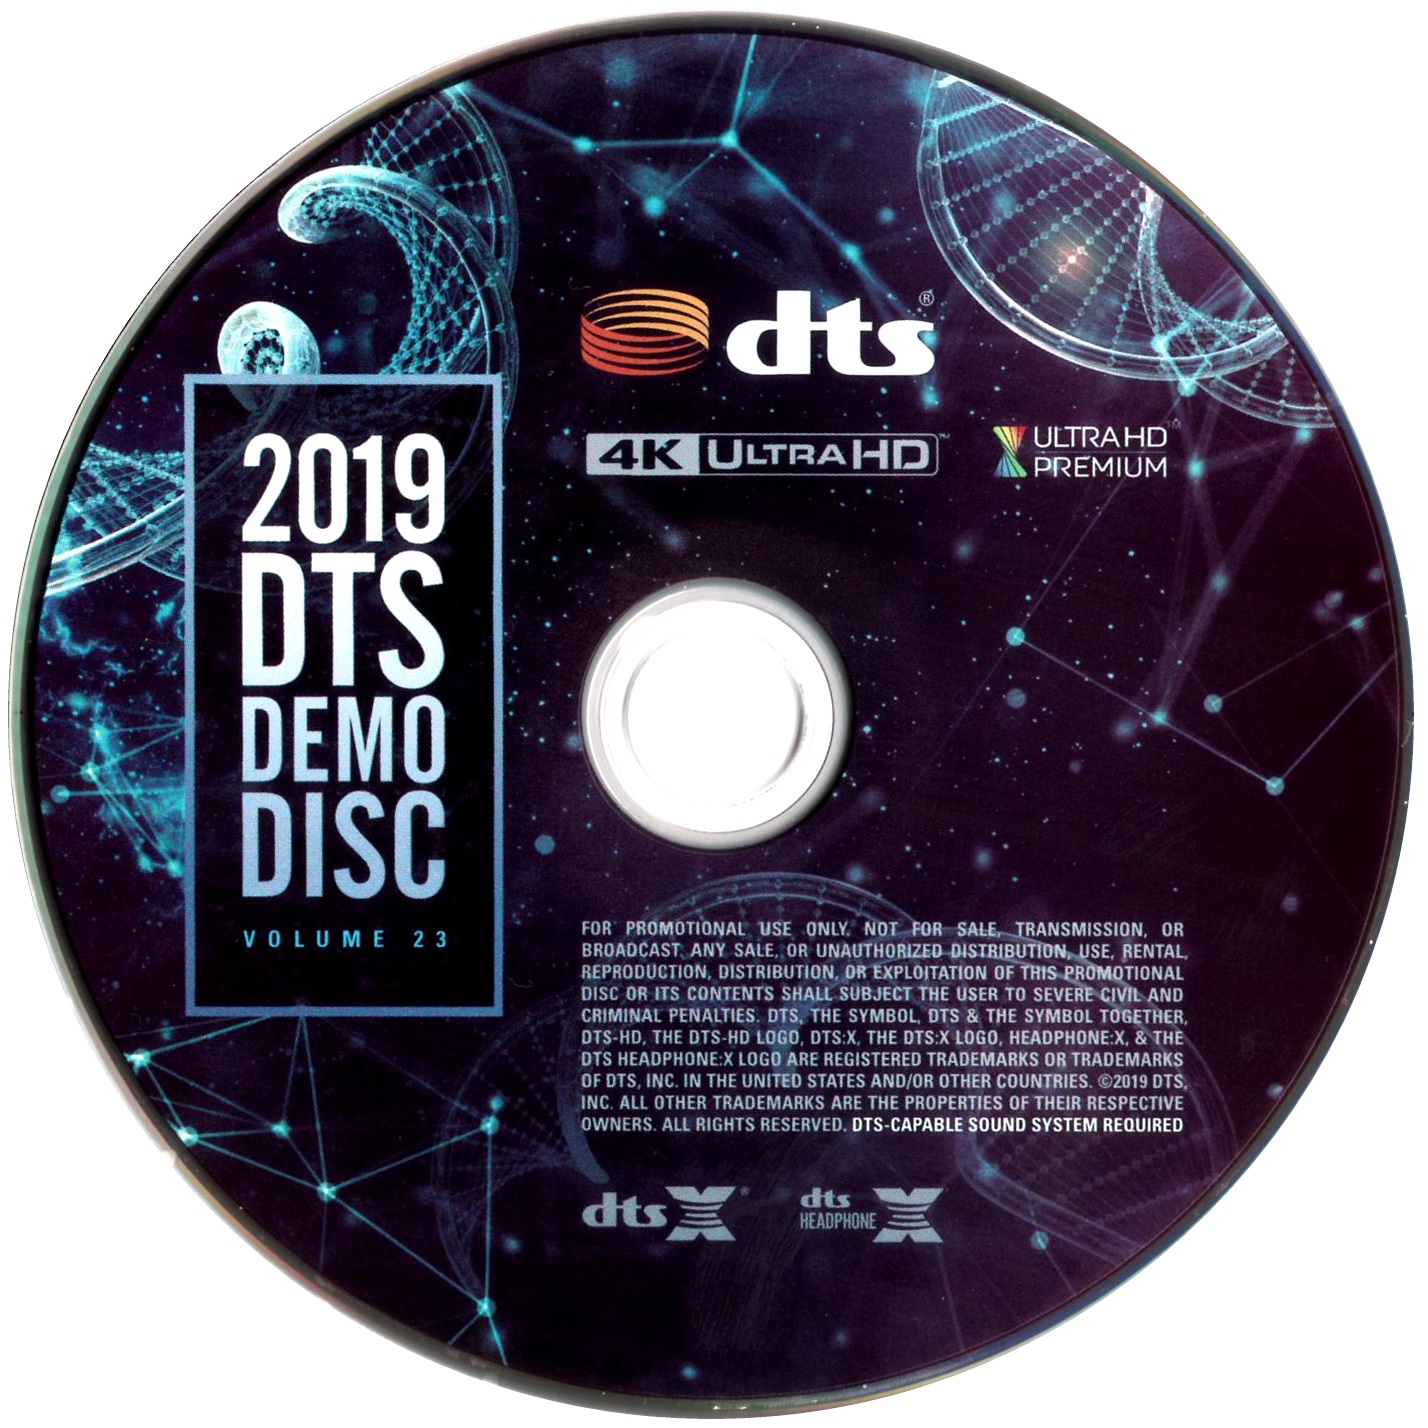 DTS蓝光演示碟 2019 4K UHD DTS Demo Disc Vol.23 H.265 HDR 4KUltraHD DTS-X 7.1-